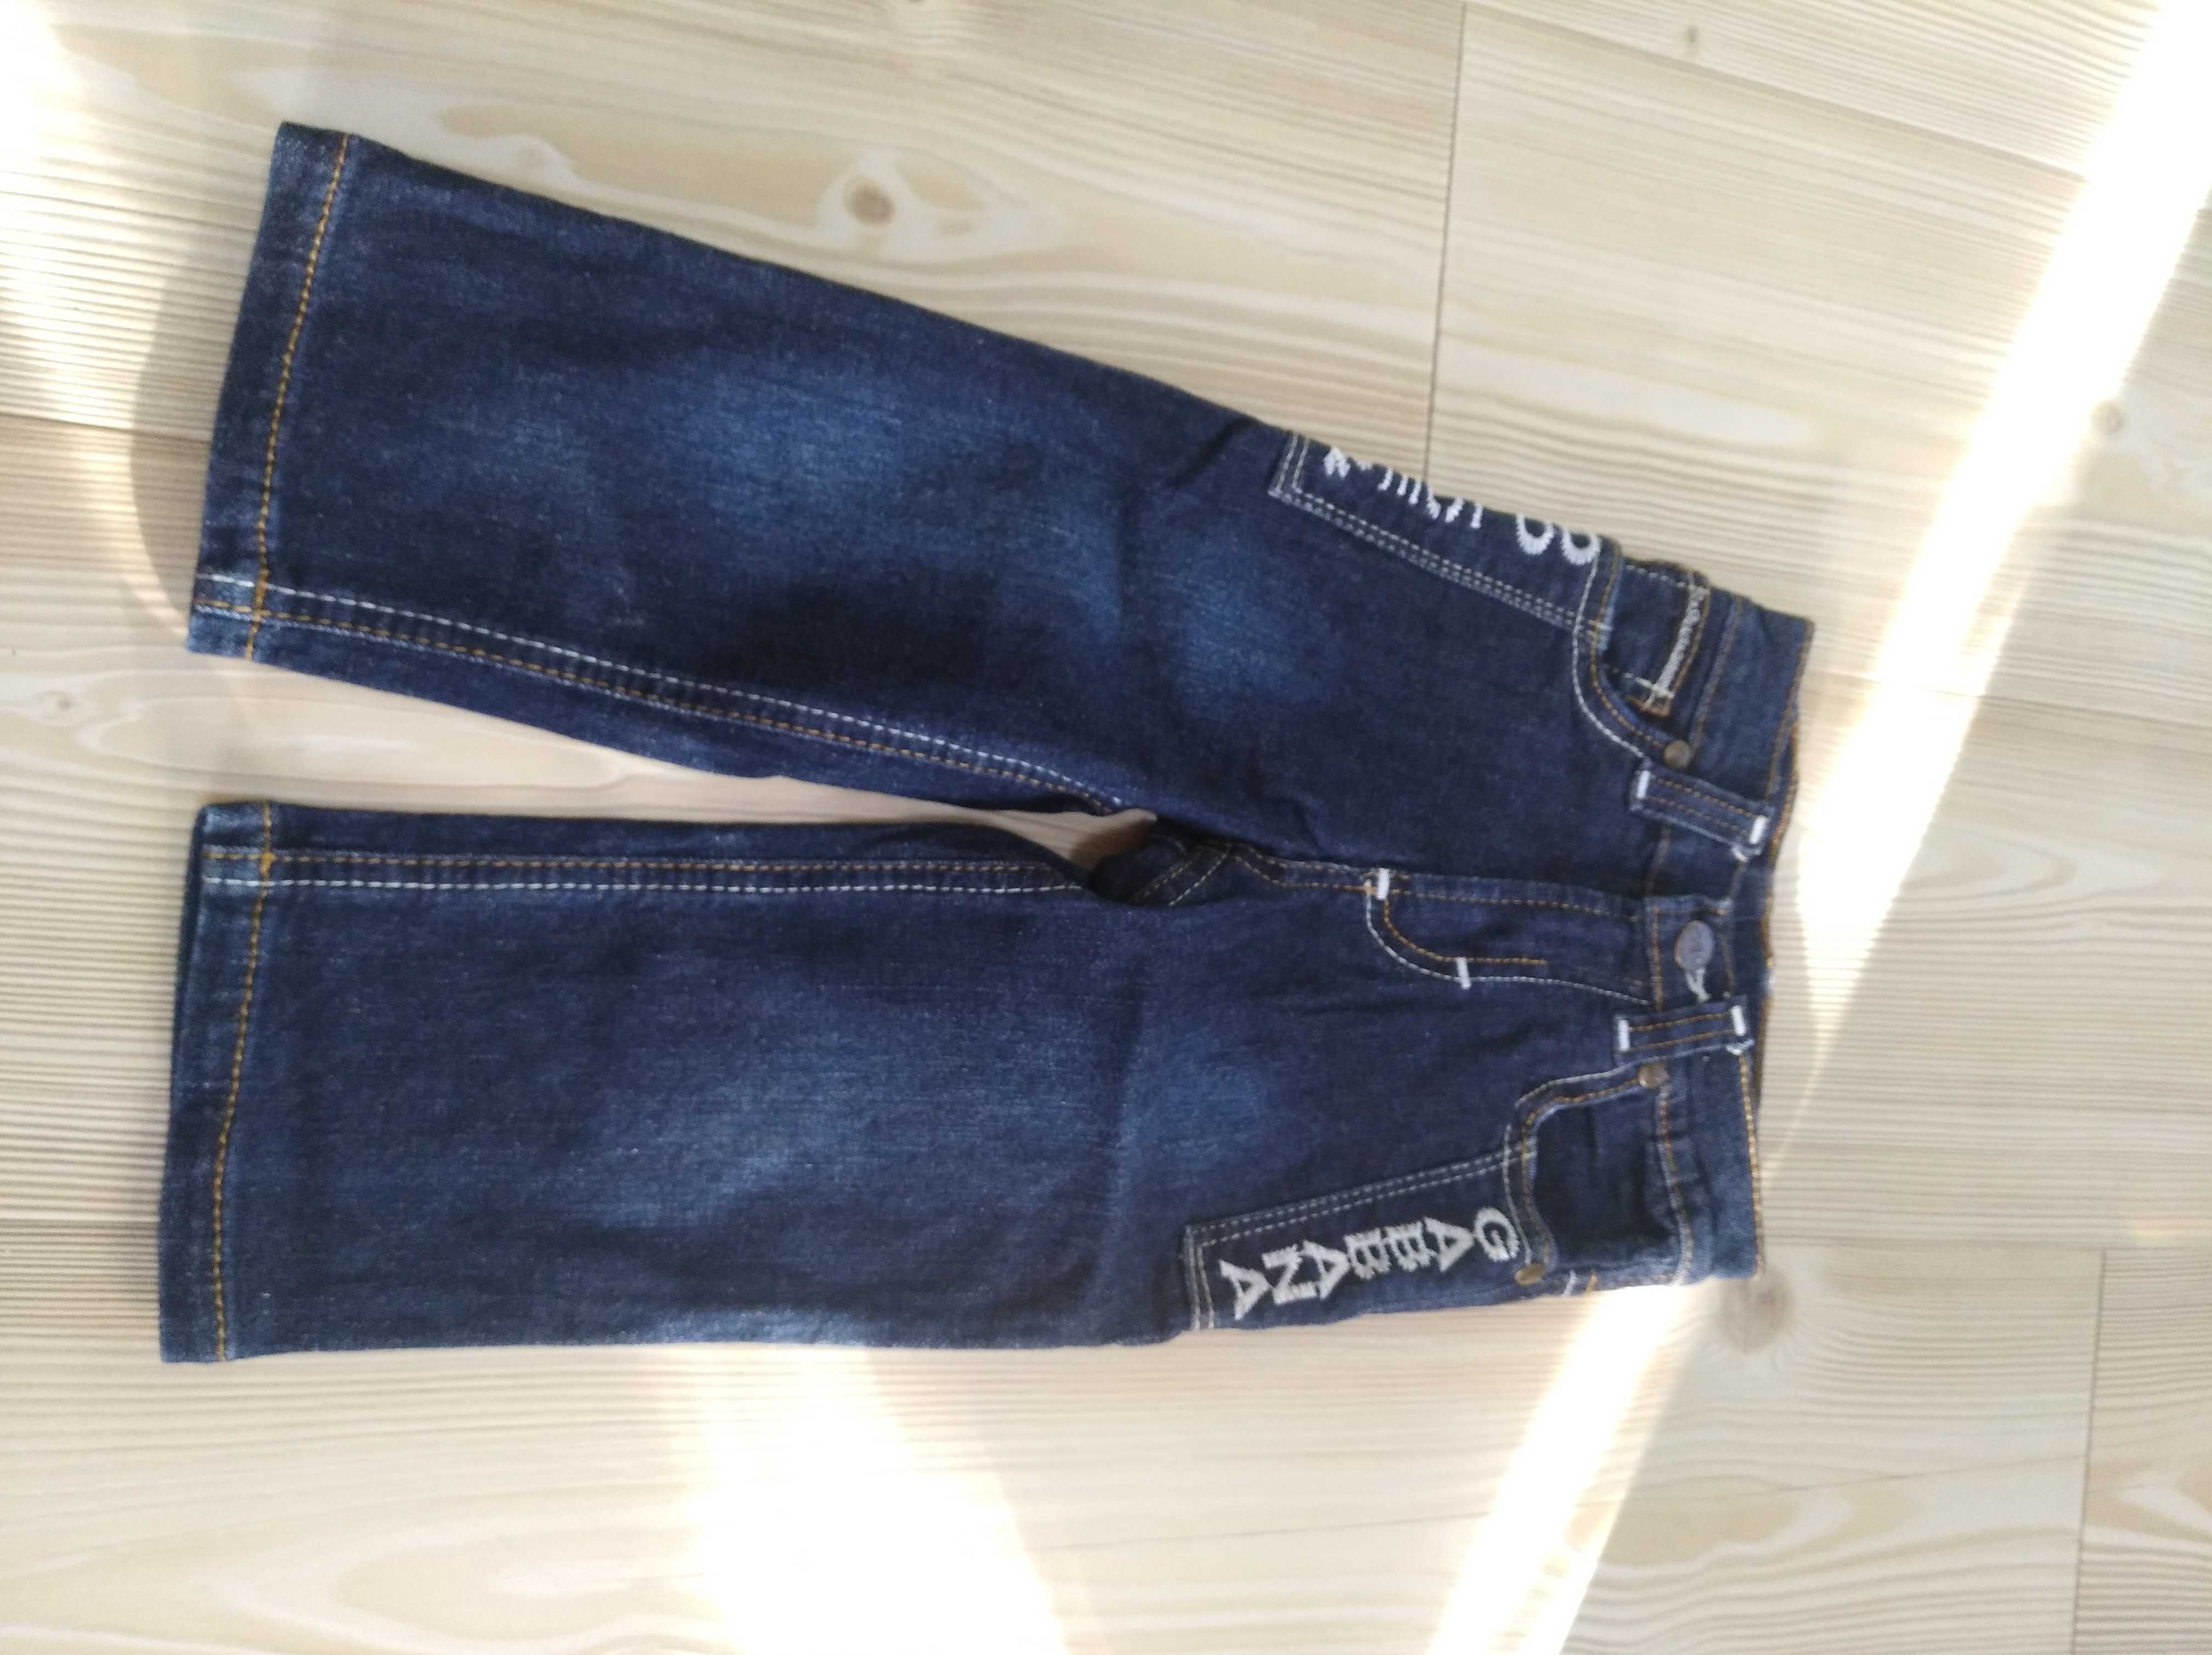 jeansy Dolce & Gabbana, 80 cm, stan idealny, 23 zł